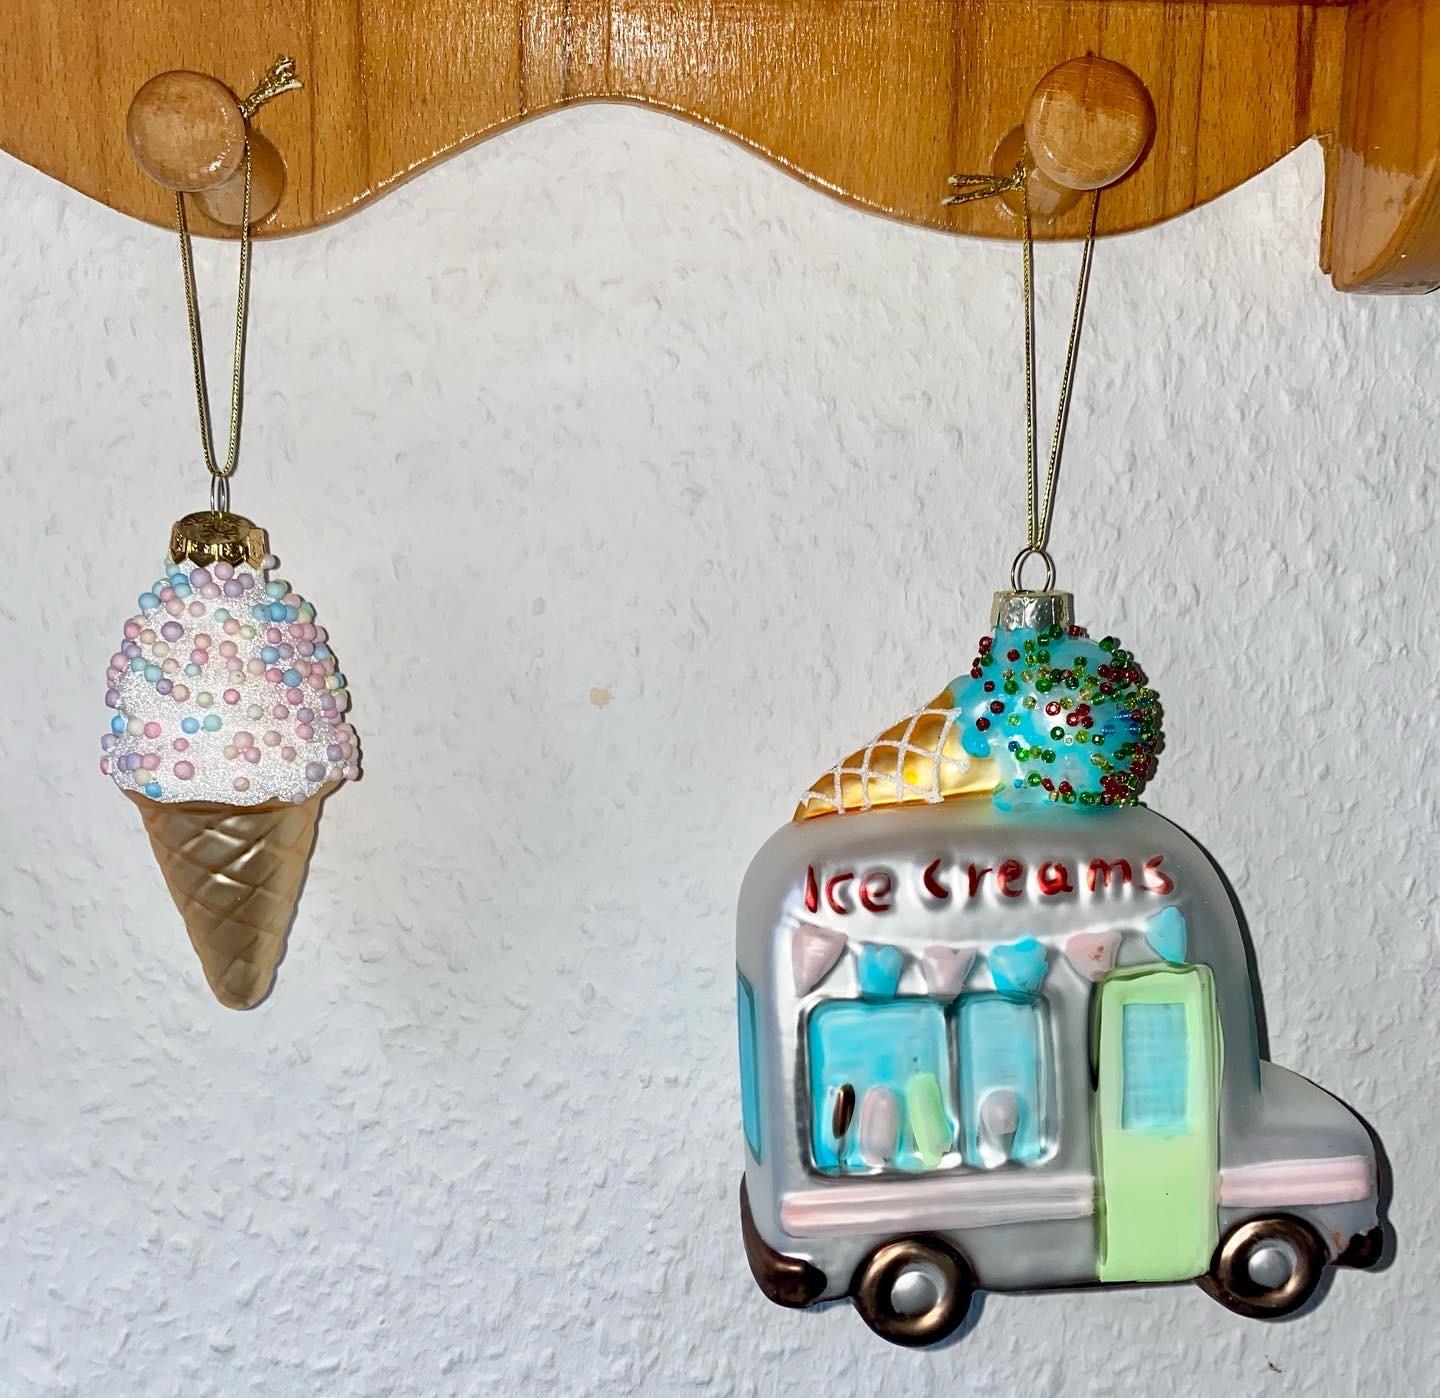 Der Eiswagen ist neu #eis #weihnachtsbaumanhänger #deko
#baumschmuck #pastell #bunt 